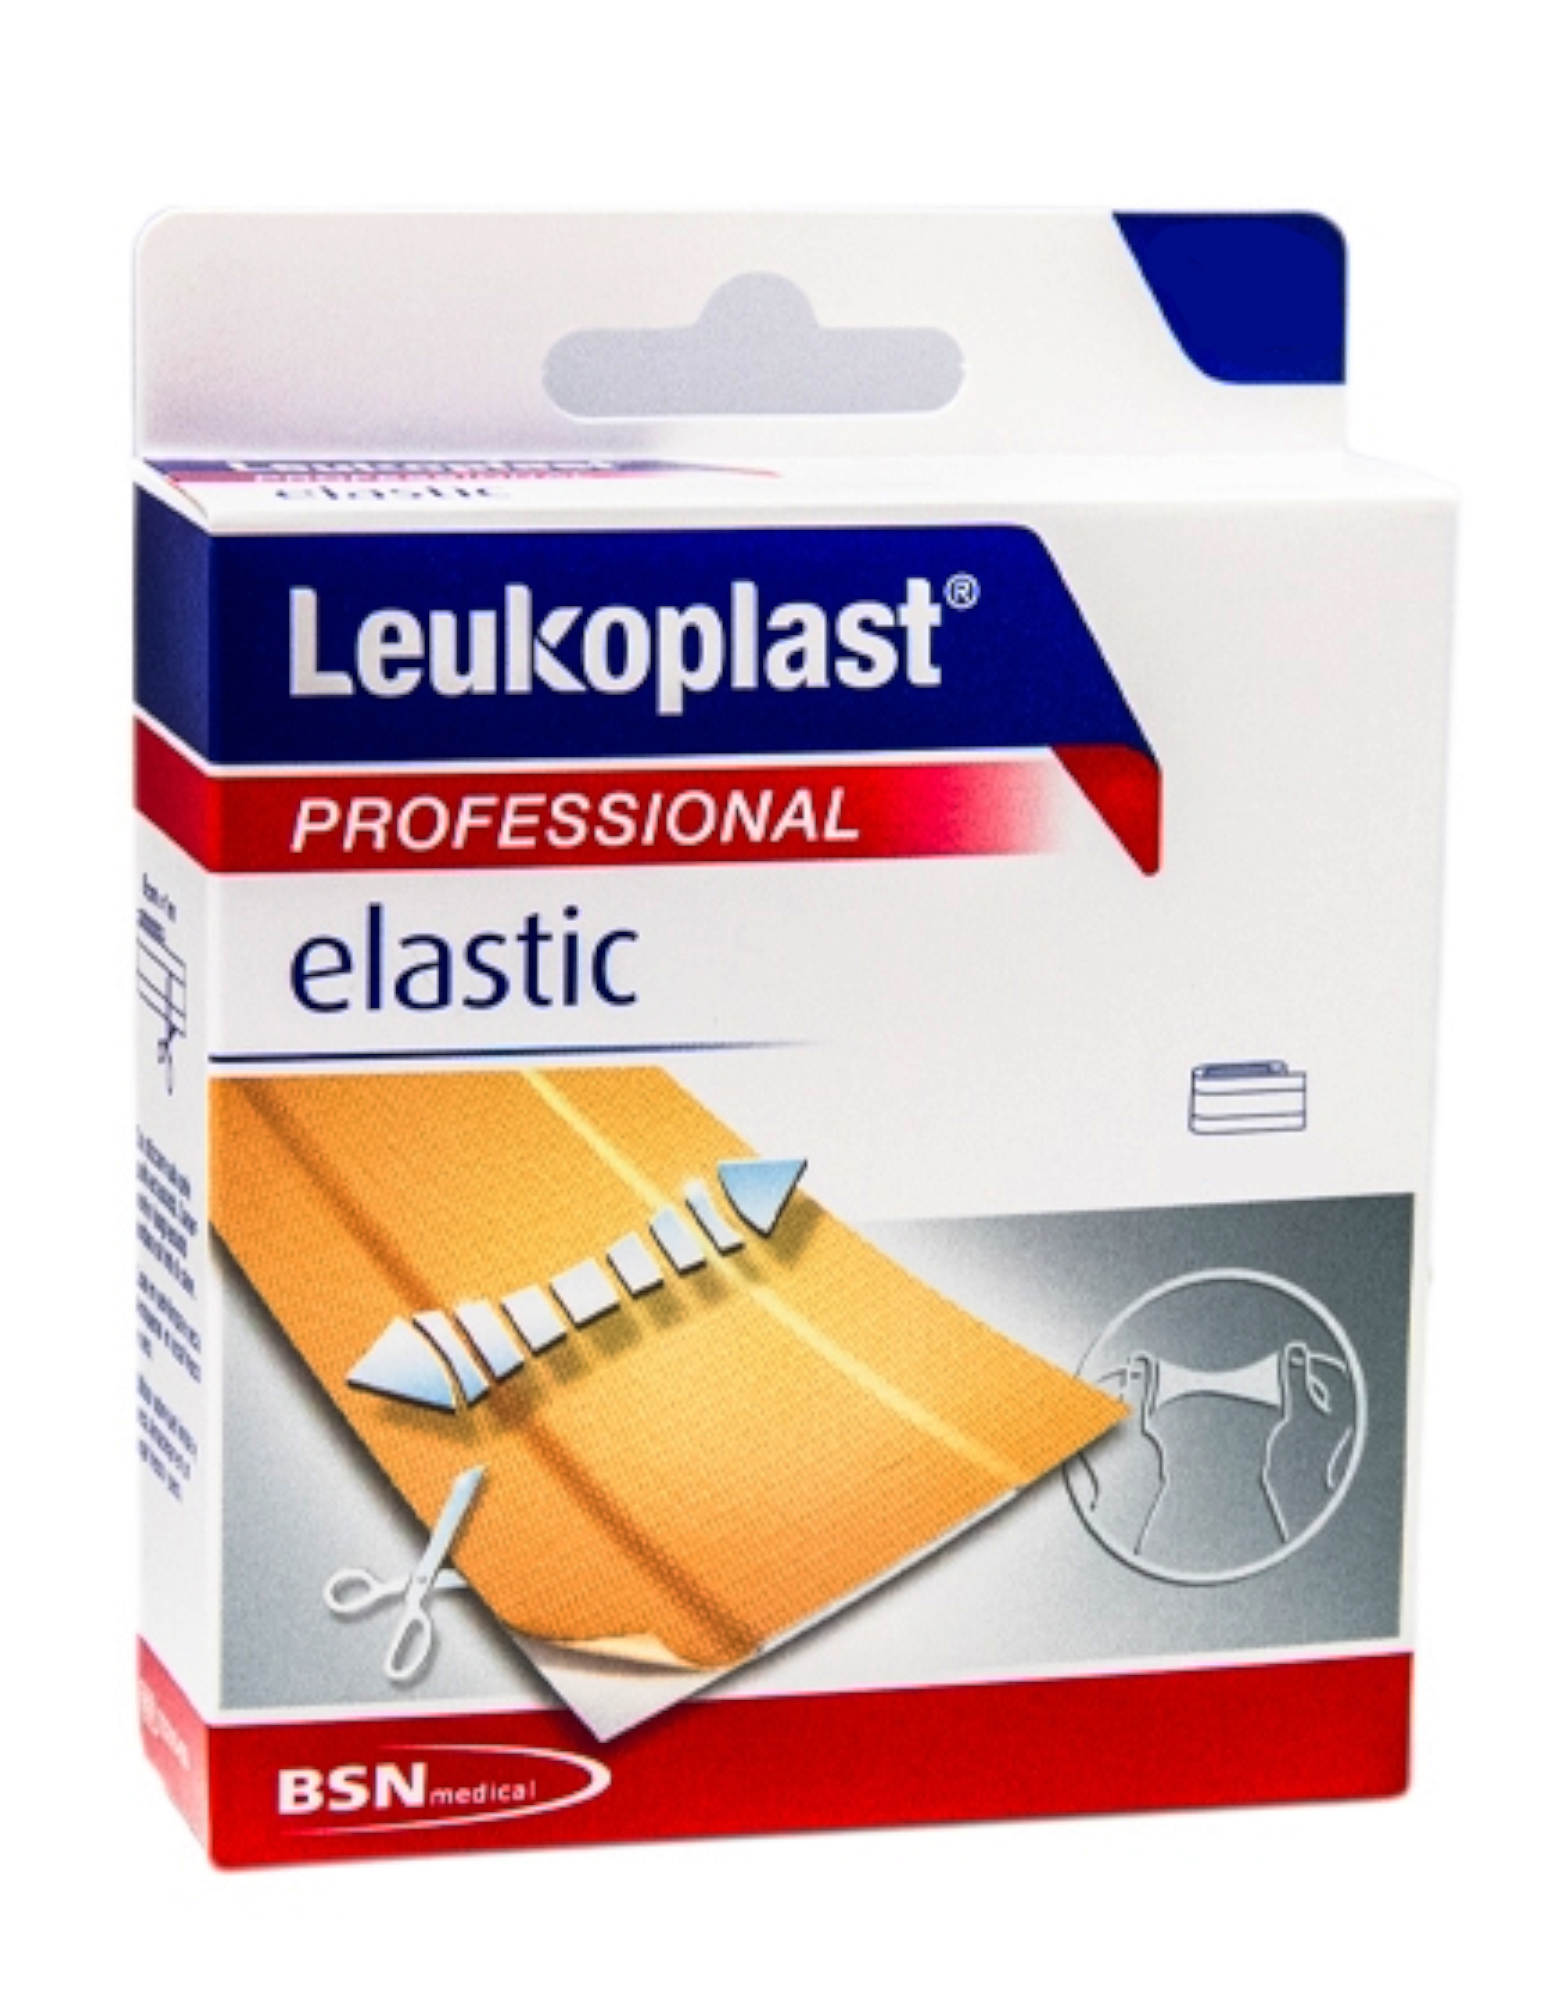 BSN MEDICAL Leukoplast - Elastic 1 Cerotto Da 1m X 6cm